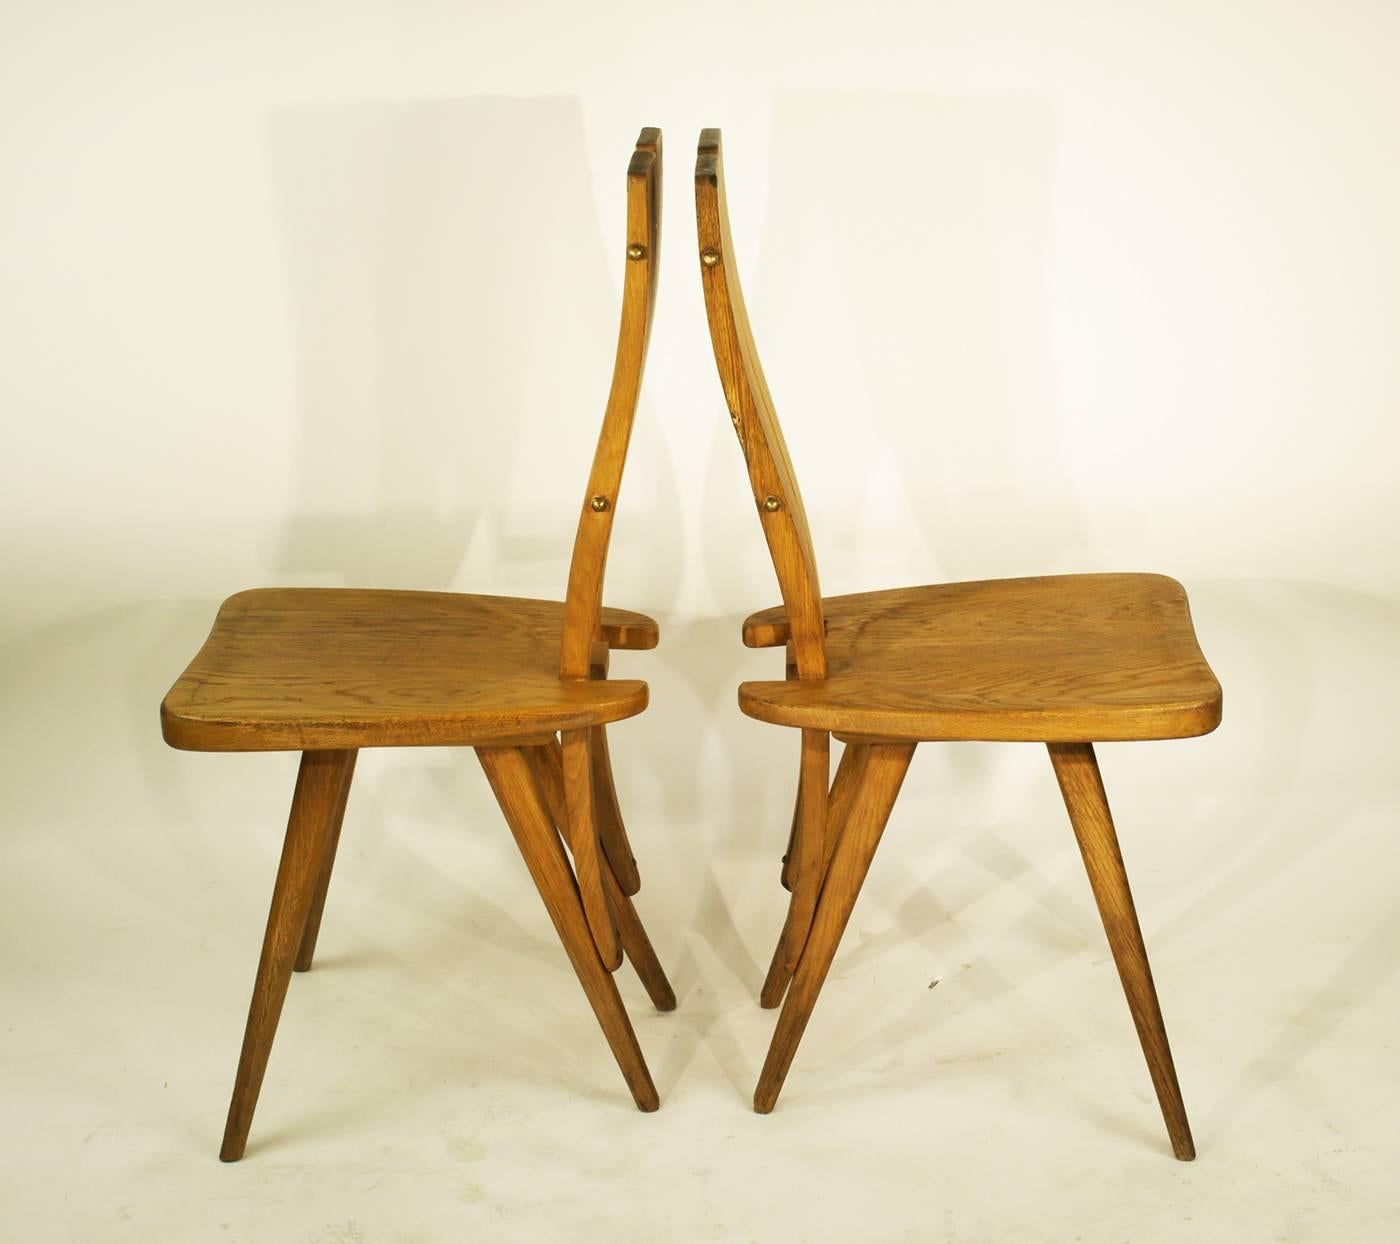 Impressionnante reproduction de la chaise de 1947 conçue à l'origine pour la Casa del Sole, Restorante Pavia, Cervinia par Carlo Mollino.
Ces chaises sont un chef-d'œuvre sculptural, fabriqué à la machine et affiné à la main pour obtenir une